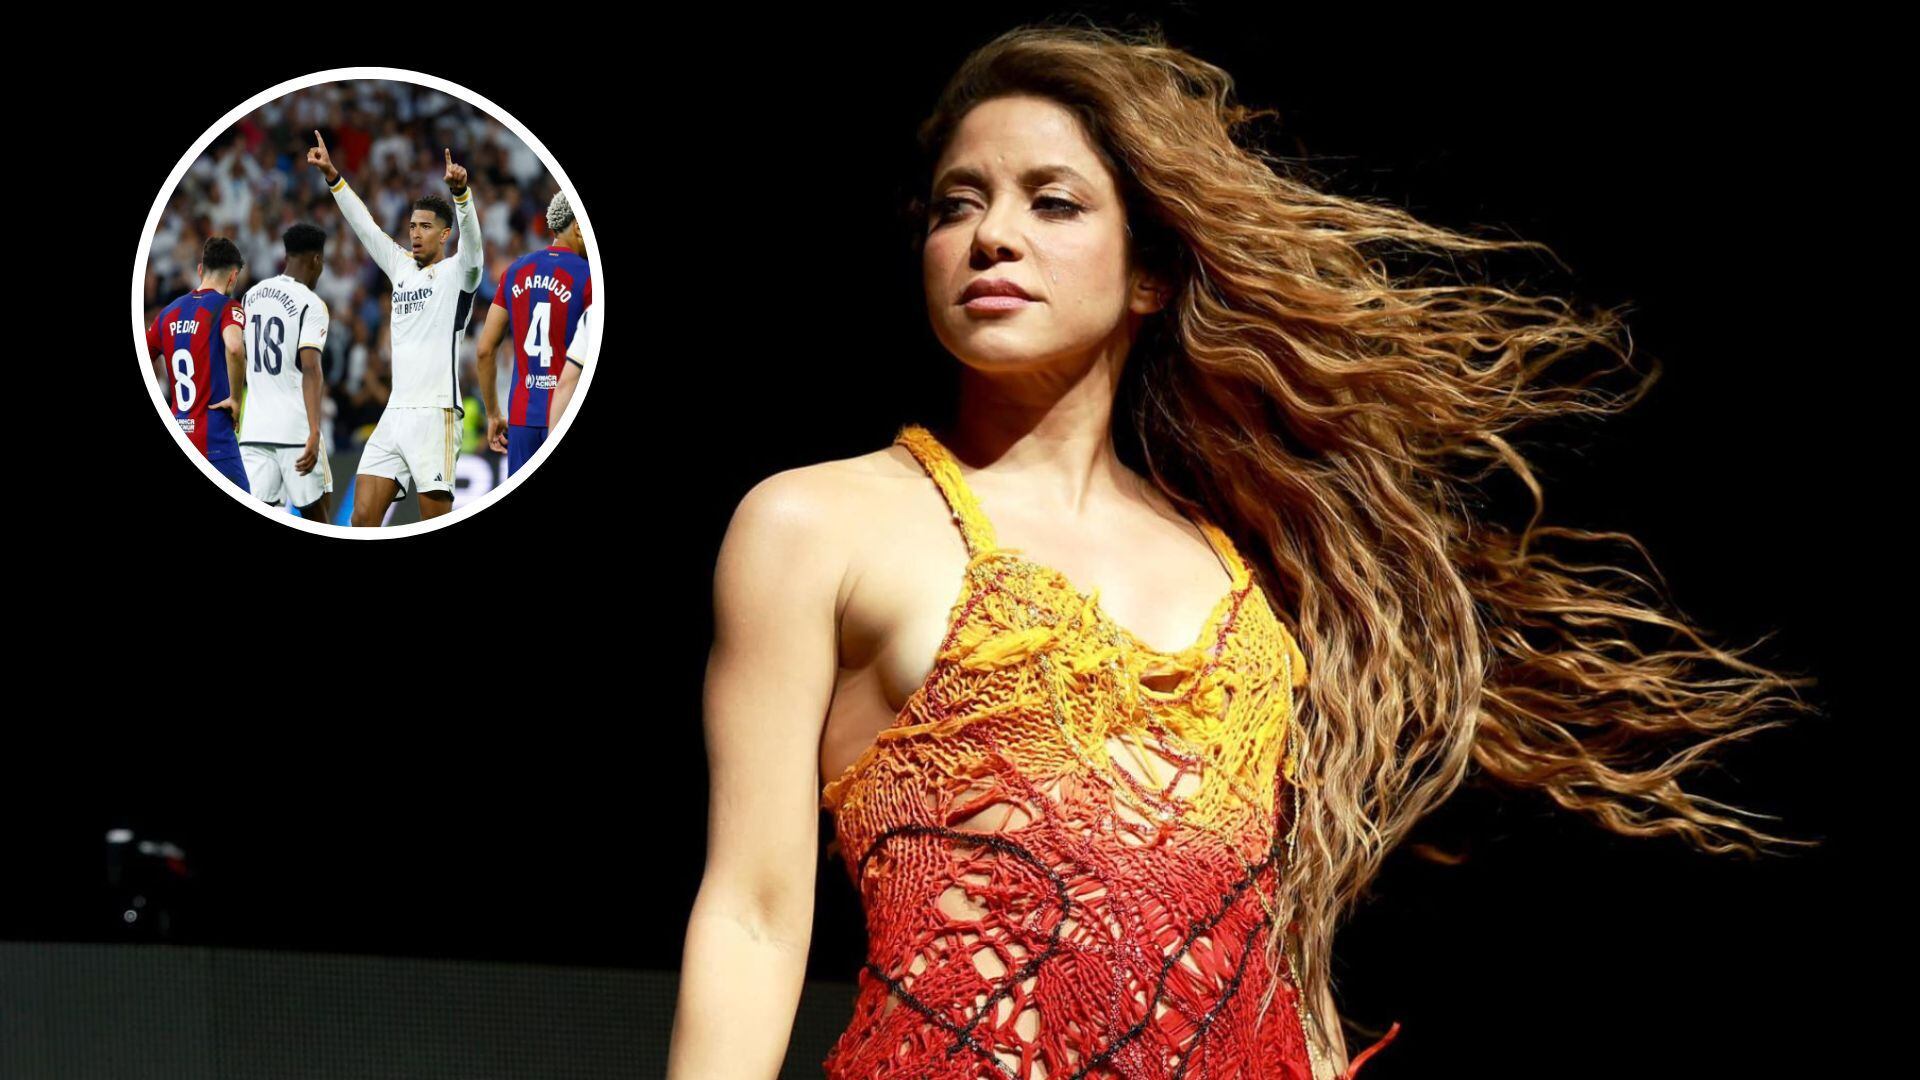 La cantante colombiana se refirió en las redes sociales sobre el super clásico - crédito REUTERS/Susana Vera/ @ShakiraFandoms1/X